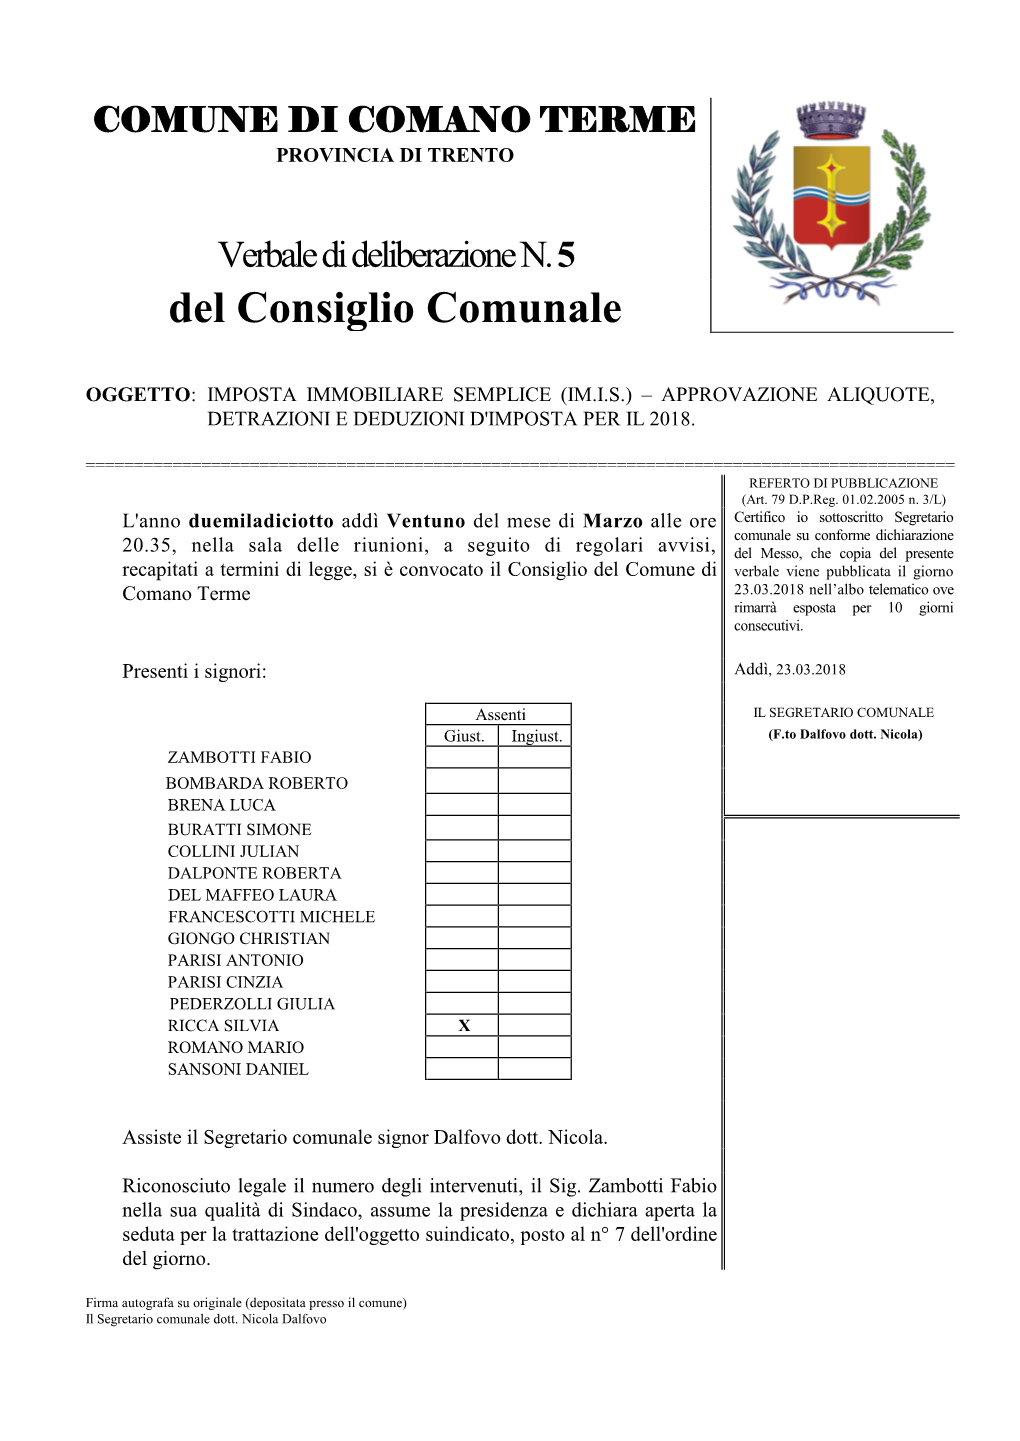 Riepilogo Aliquote IMIS Comune Di Comano Terme 2018